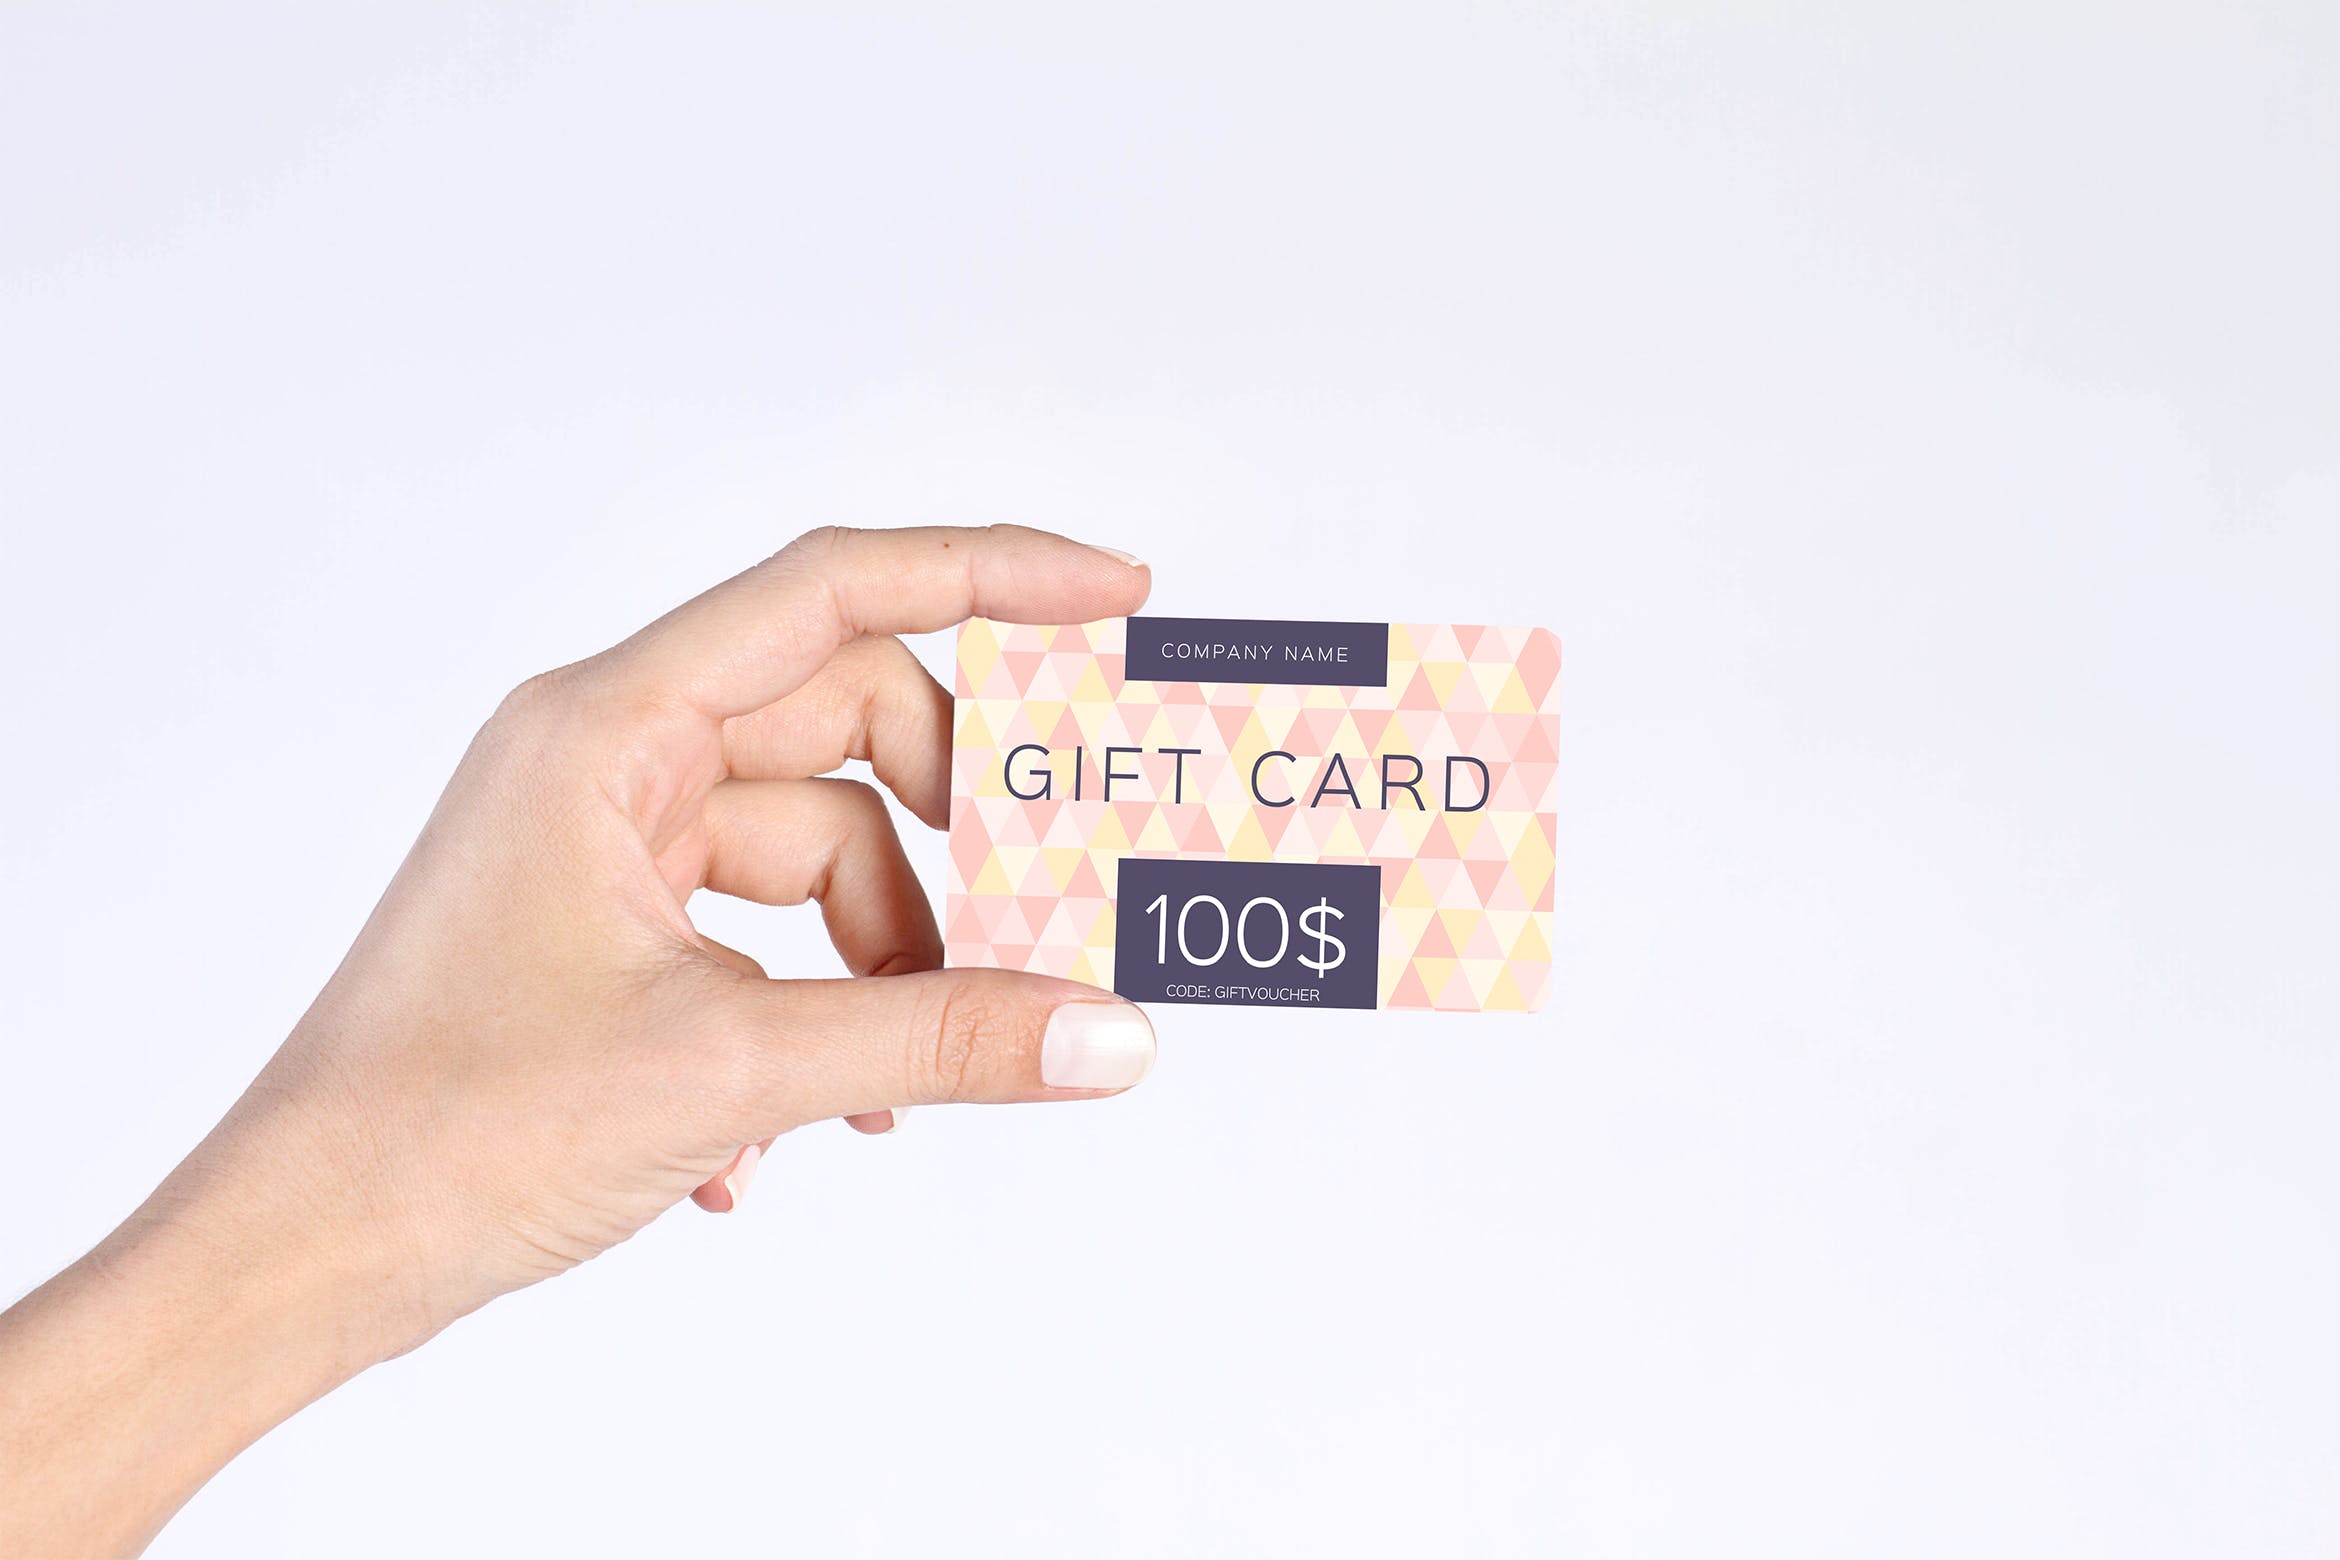 购物礼品卡手持设计样机模板 Gift Card Mockup设计素材模板